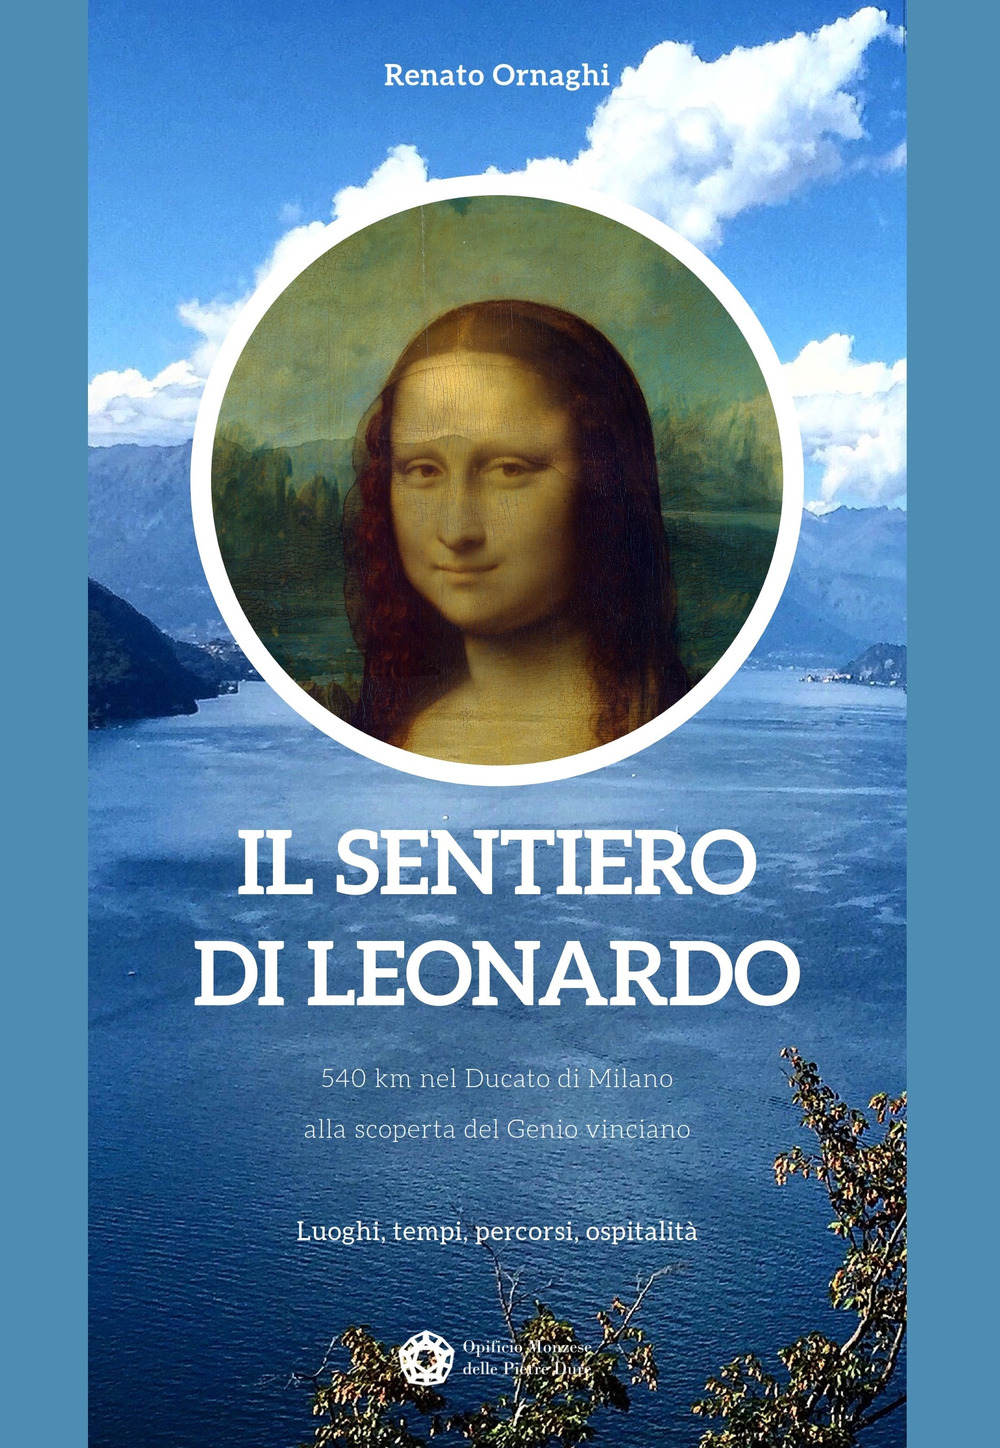 Il sentiero di Leonardo. 540 km nel Ducato di Milano, alla scoperta del Genio vinciano. Luoghi, tempi, percorsi, ospitalità